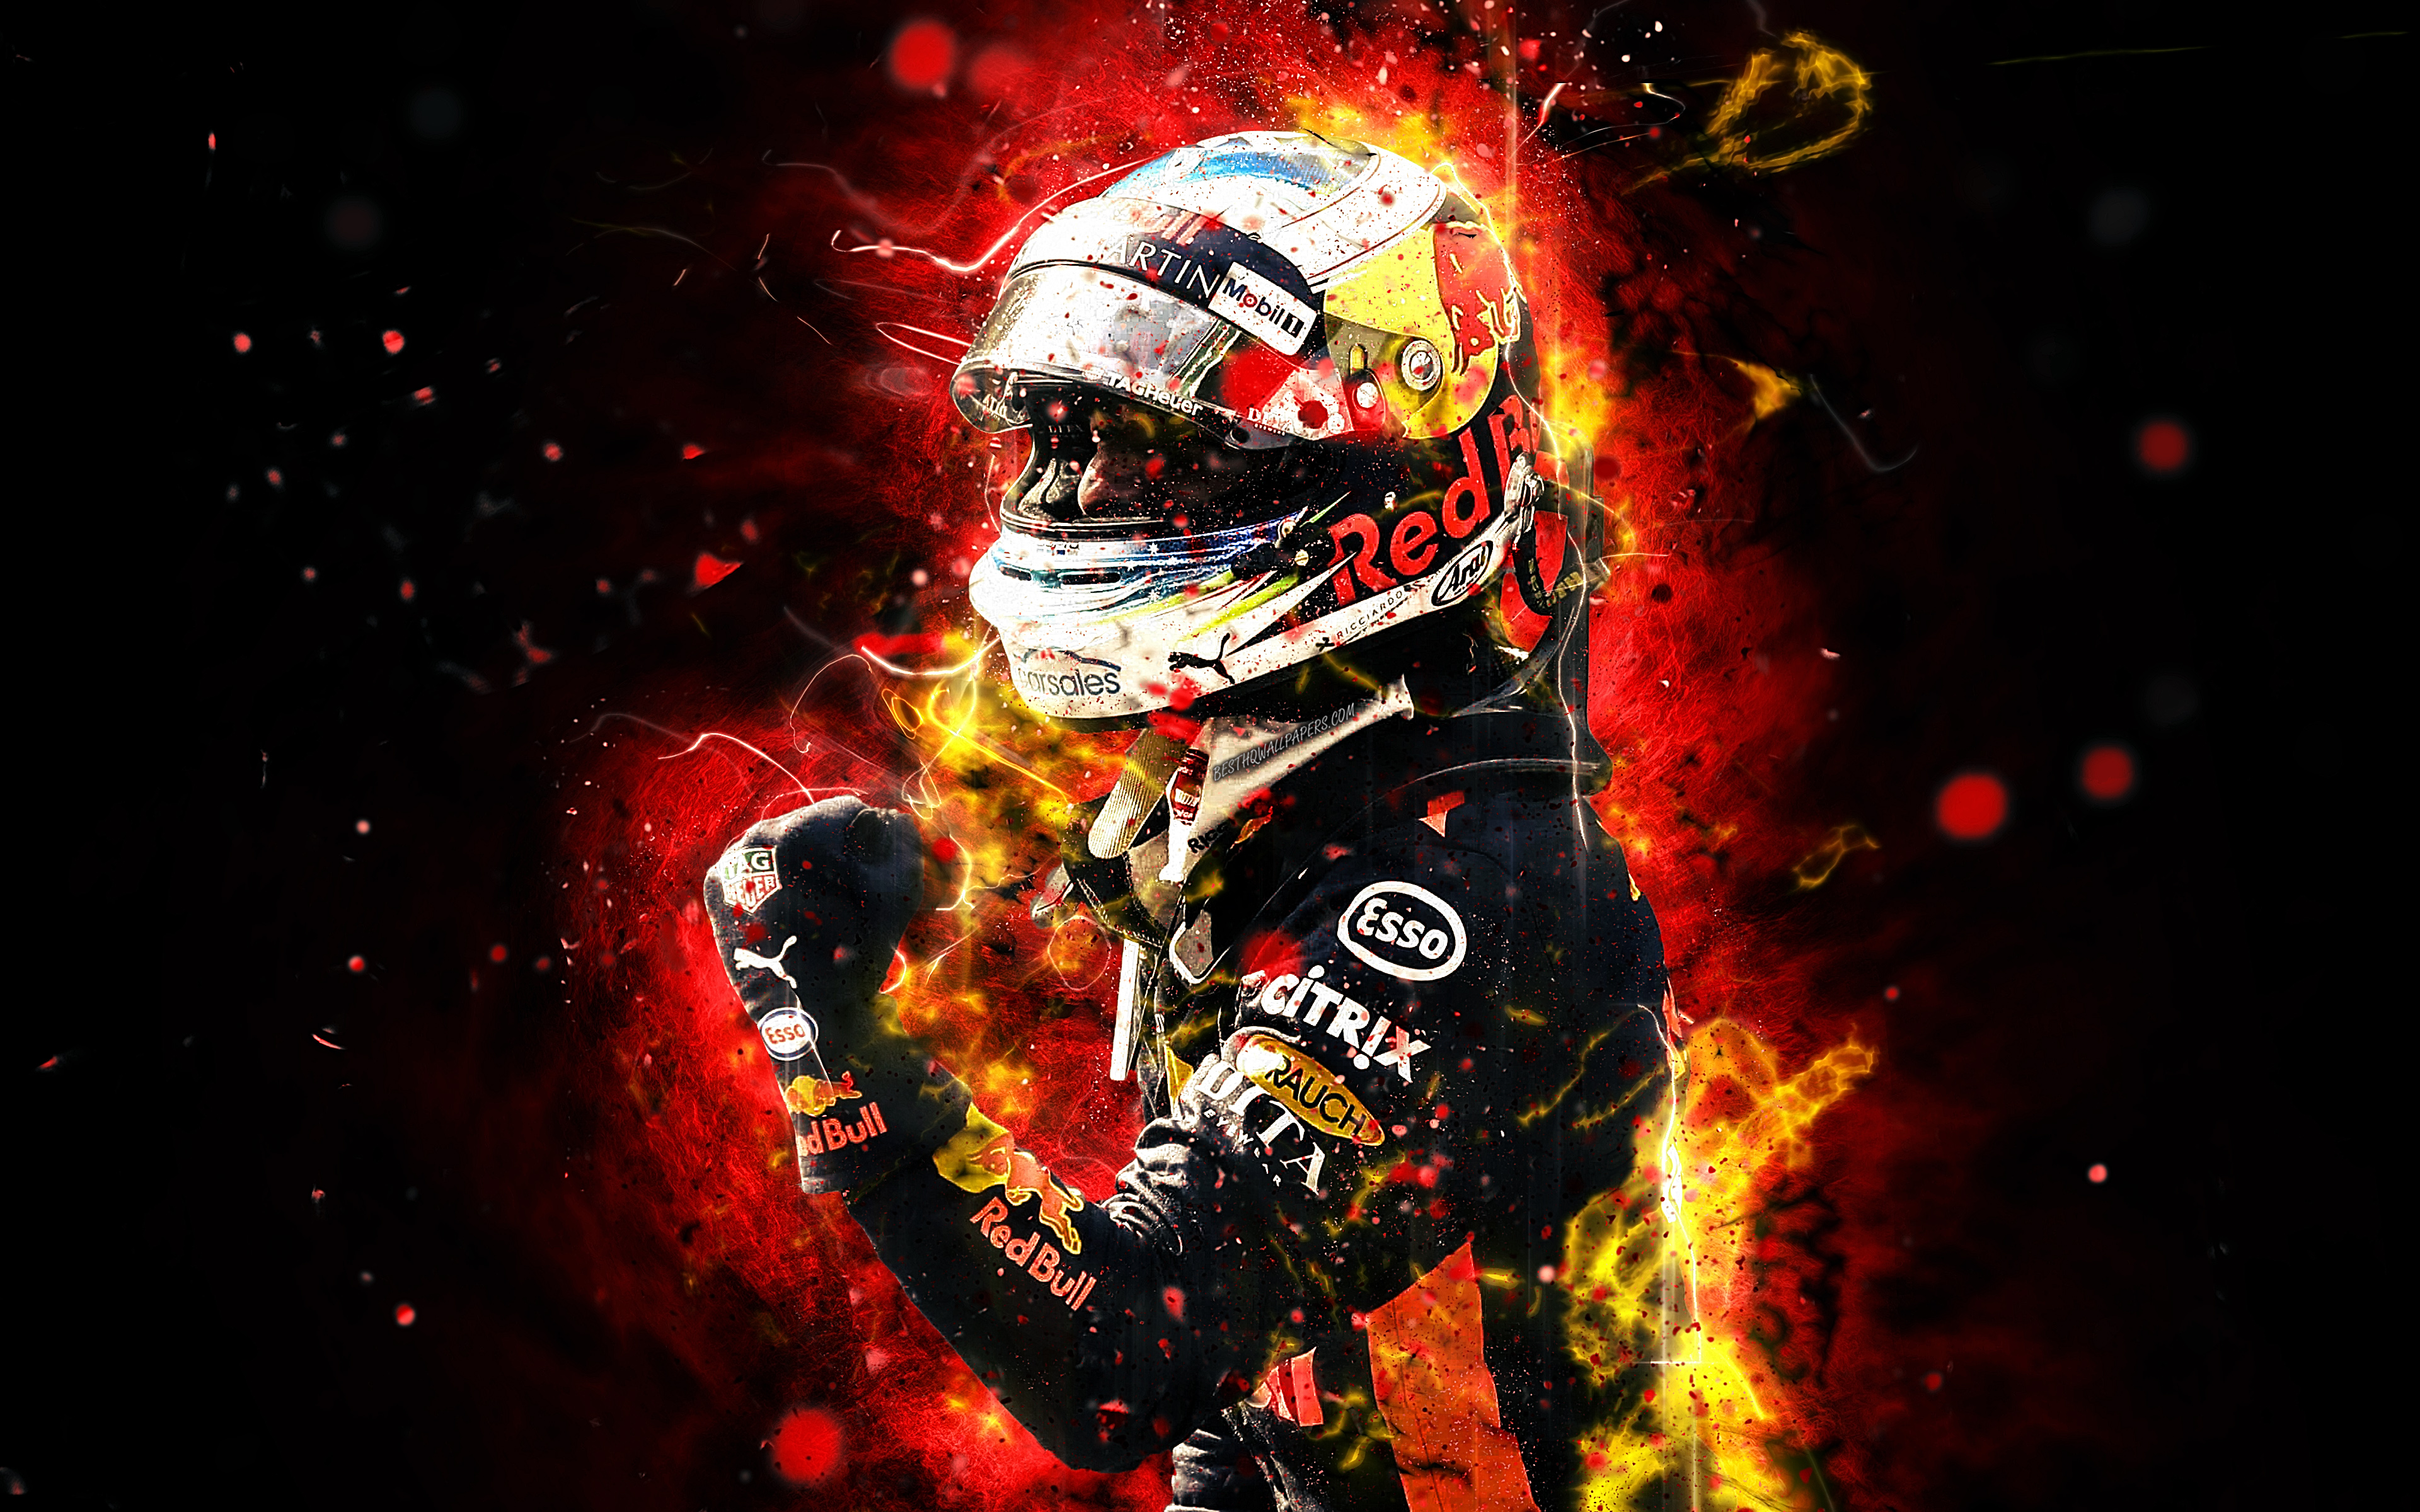 McLaren Daniel Ricciardo - Monza 2021 Poster